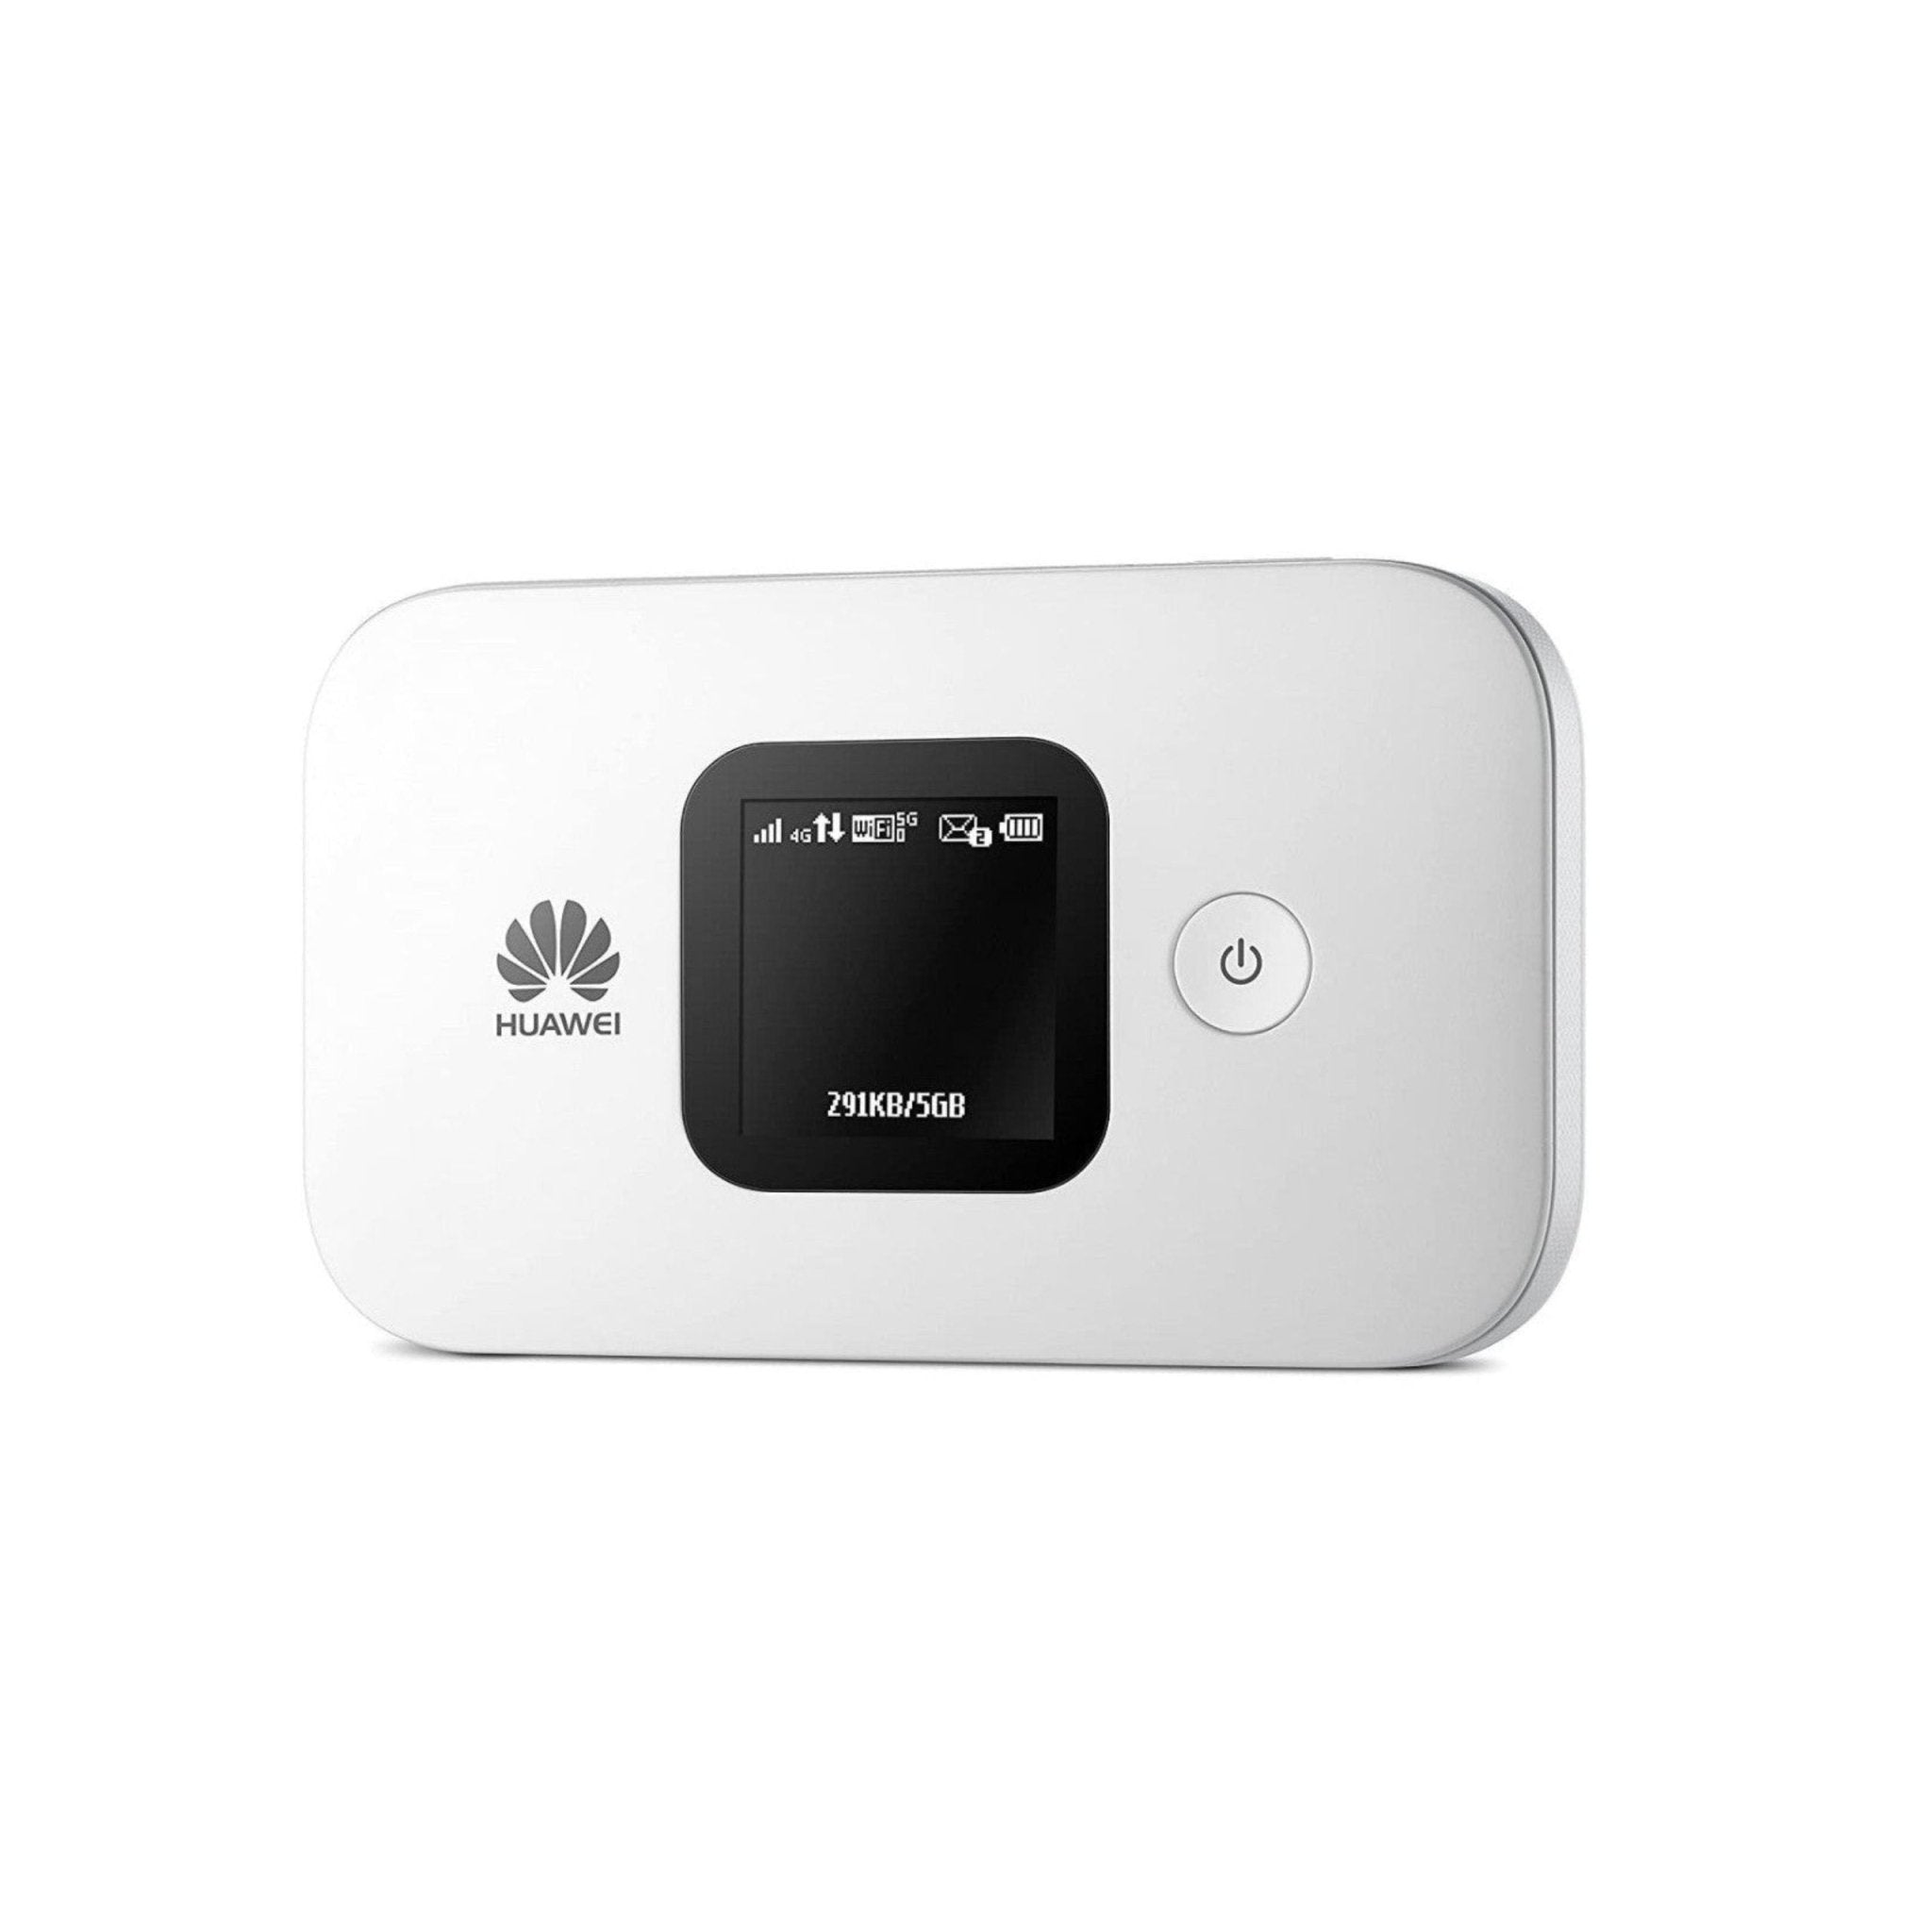 Huawei Mobile WiFi 150Mbps 1500mAh E5577-320 - White